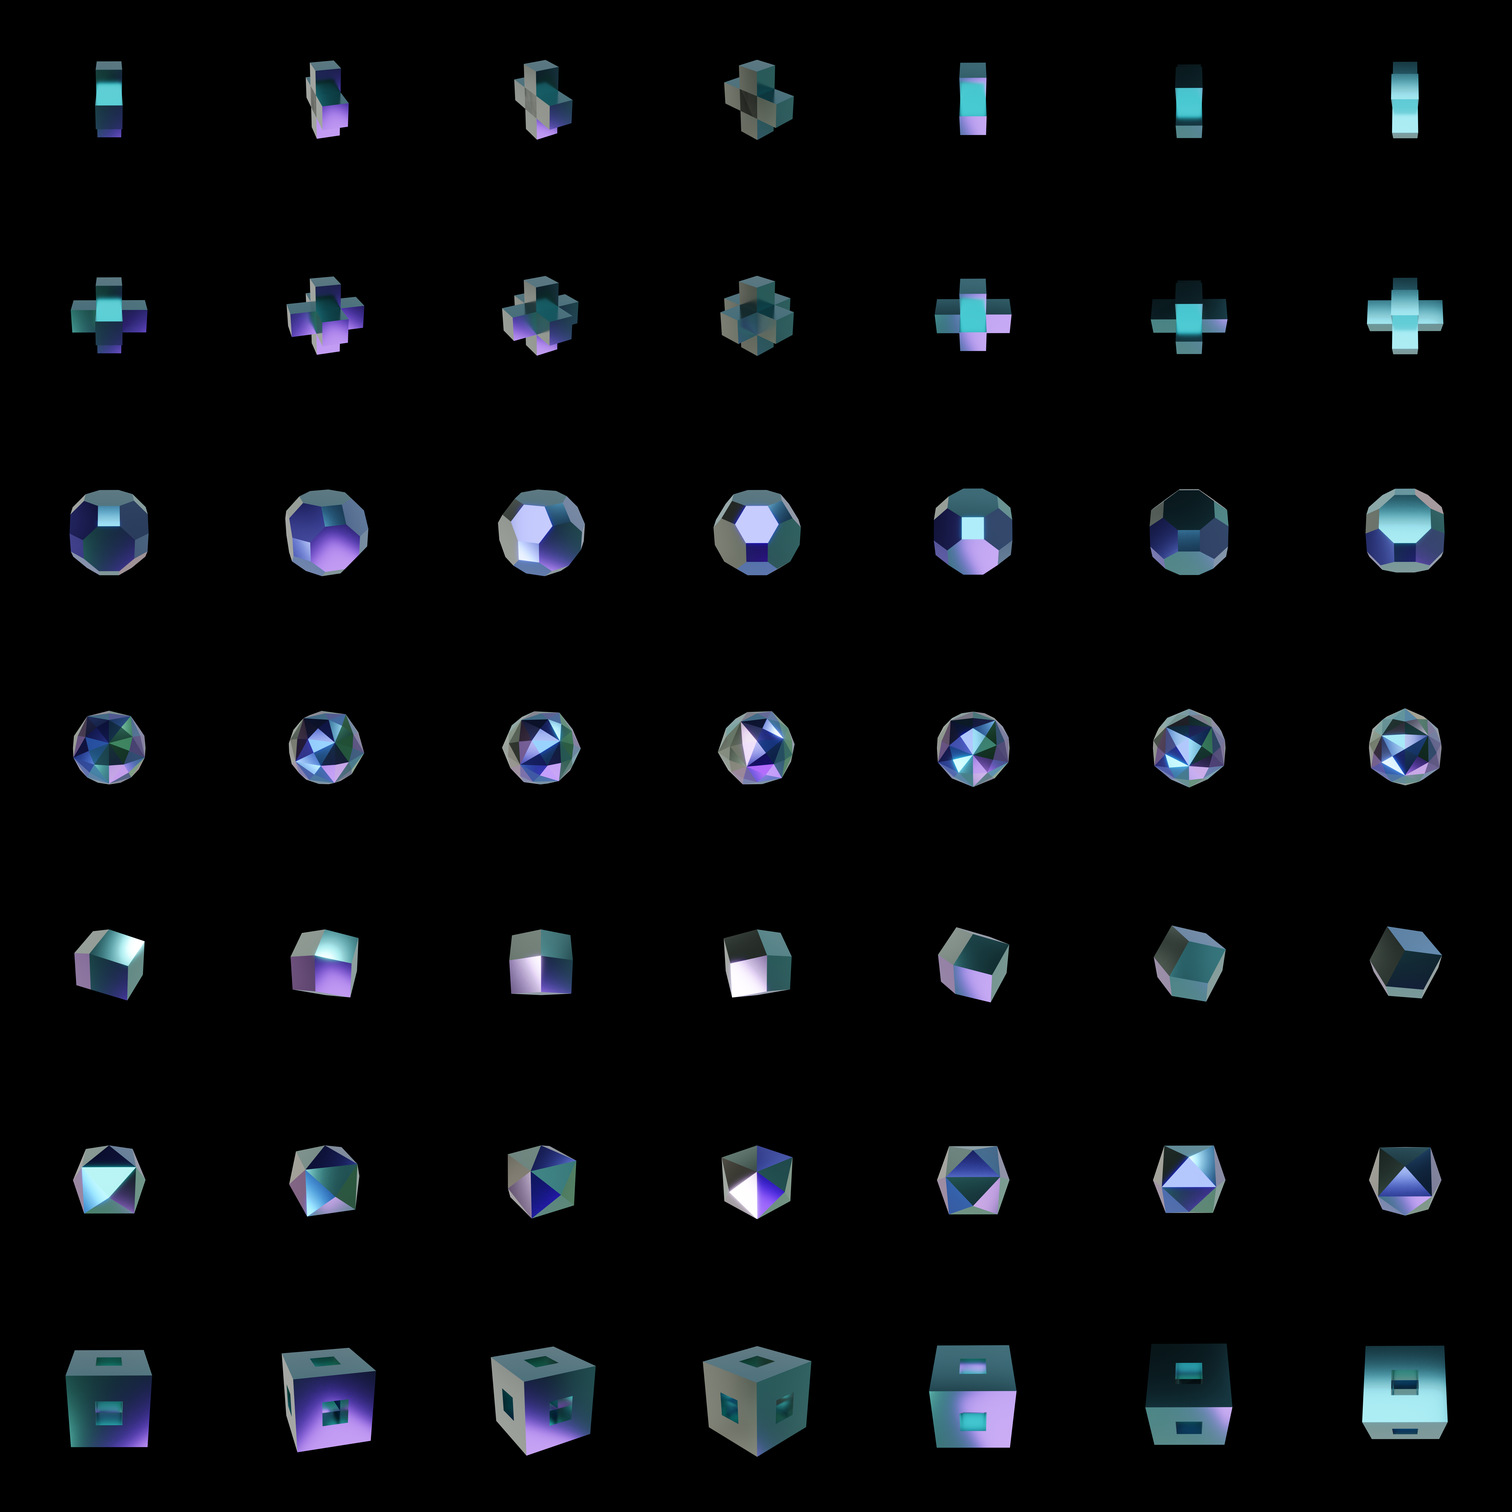 The Bundle - m.hologram/b tile image 1